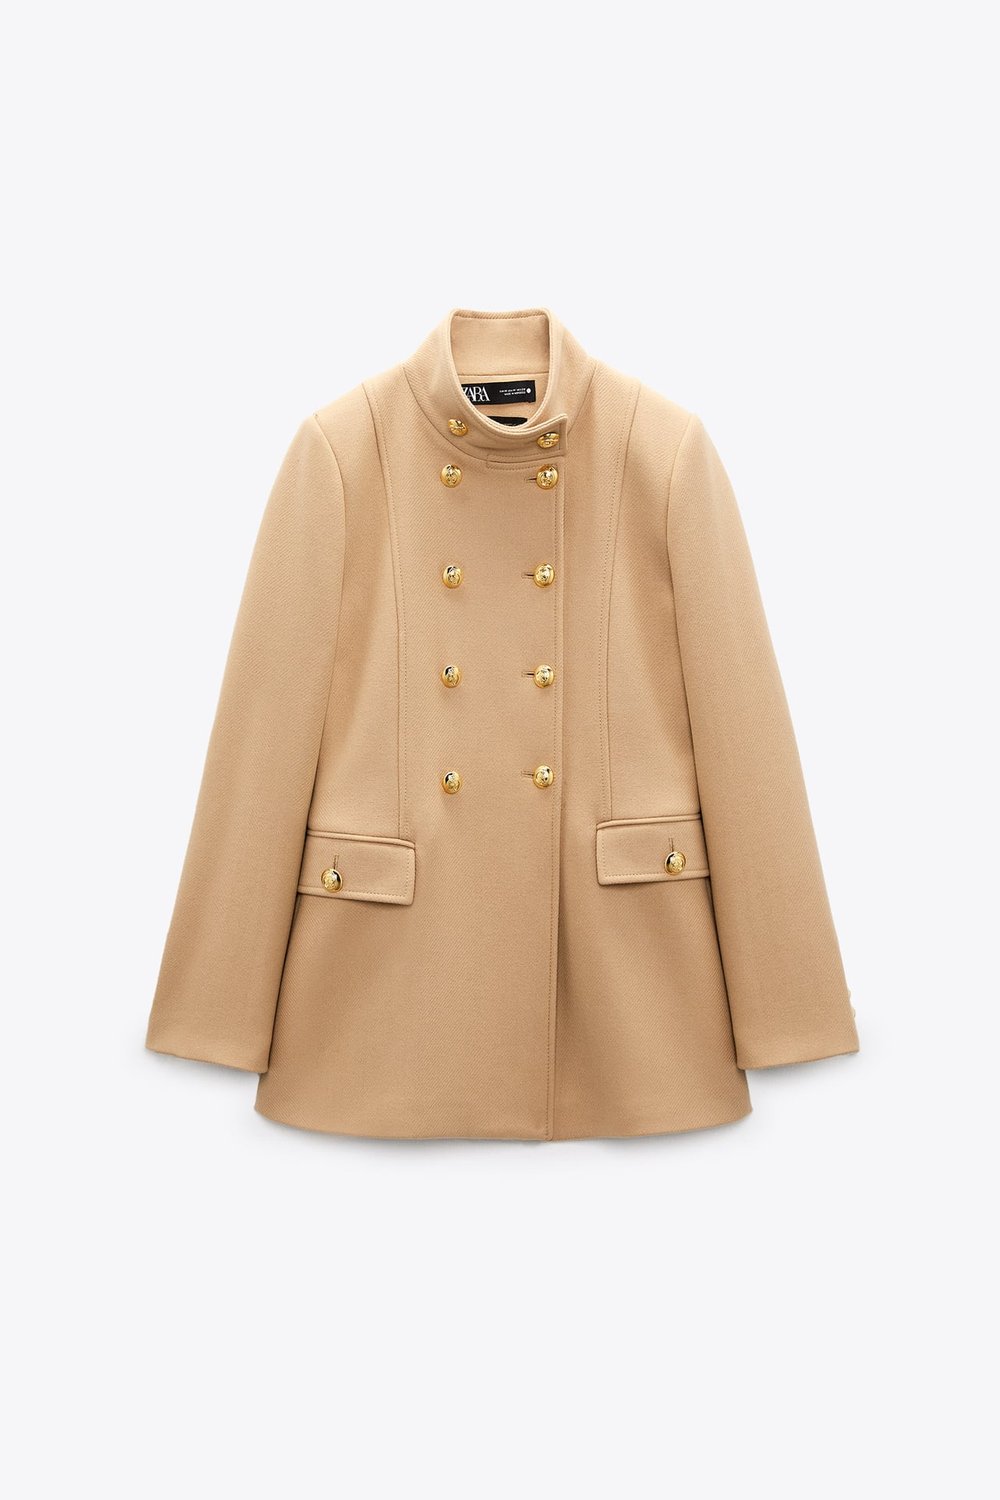 Zara Golden Buttons Wool Blend Coat — UFO No More